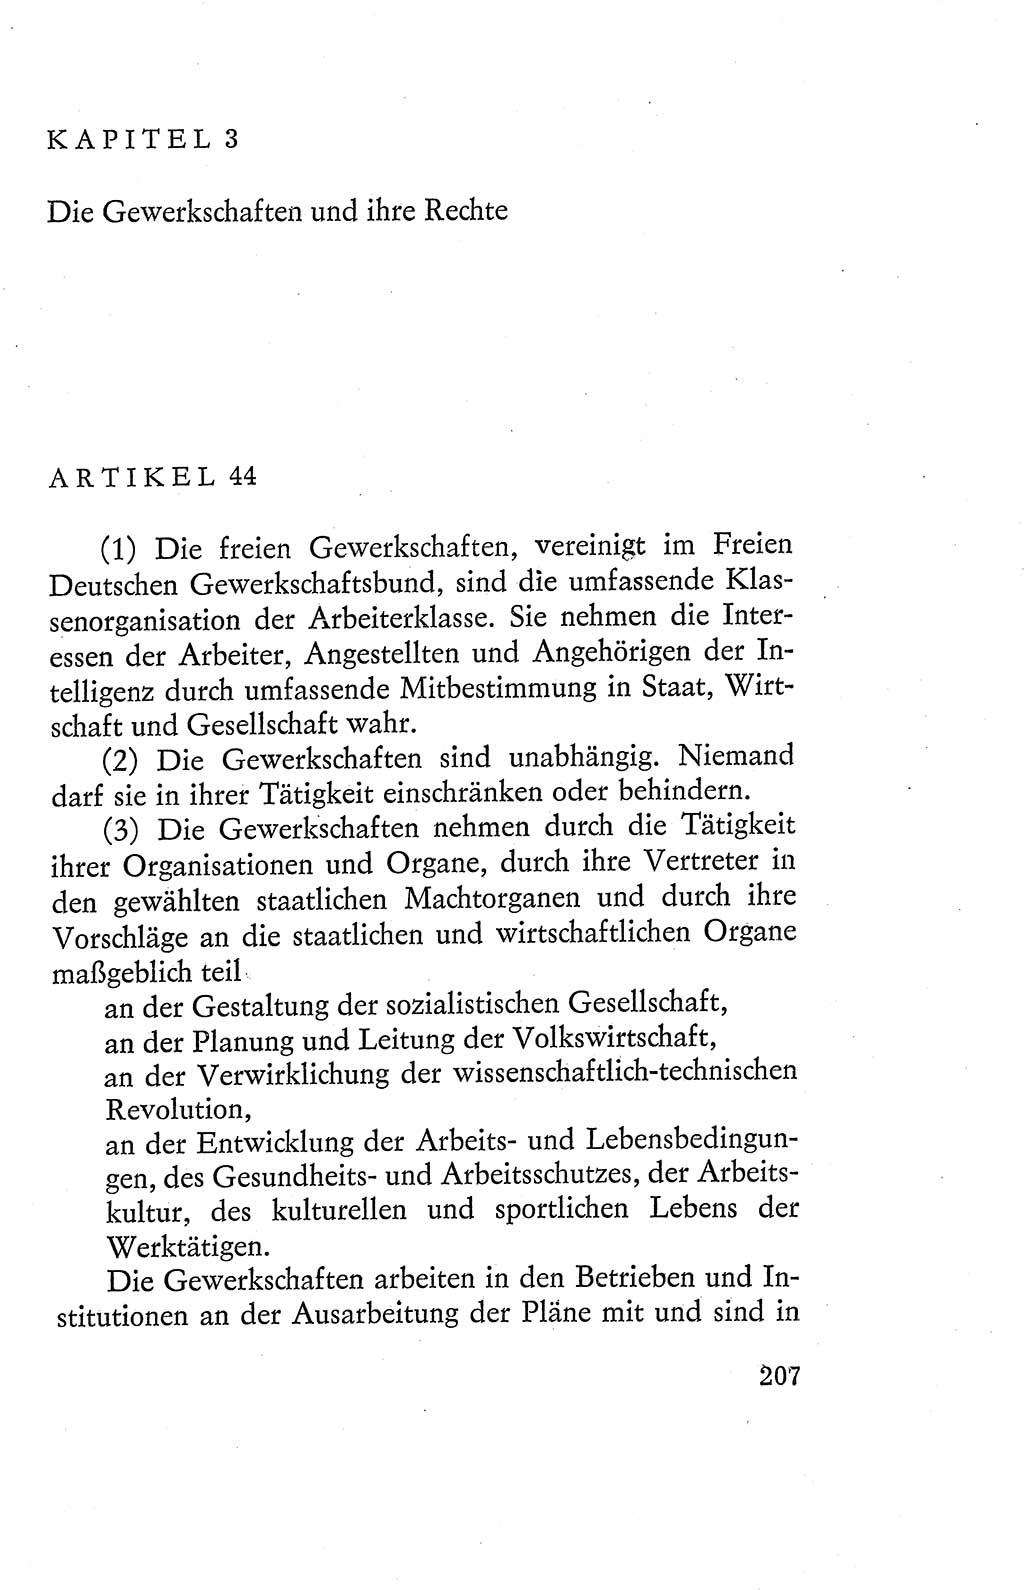 Verfassung der Deutschen Demokratischen Republik (DDR), Dokumente, Kommentar 1969, Band 2, Seite 207 (Verf. DDR Dok. Komm. 1969, Bd. 2, S. 207)